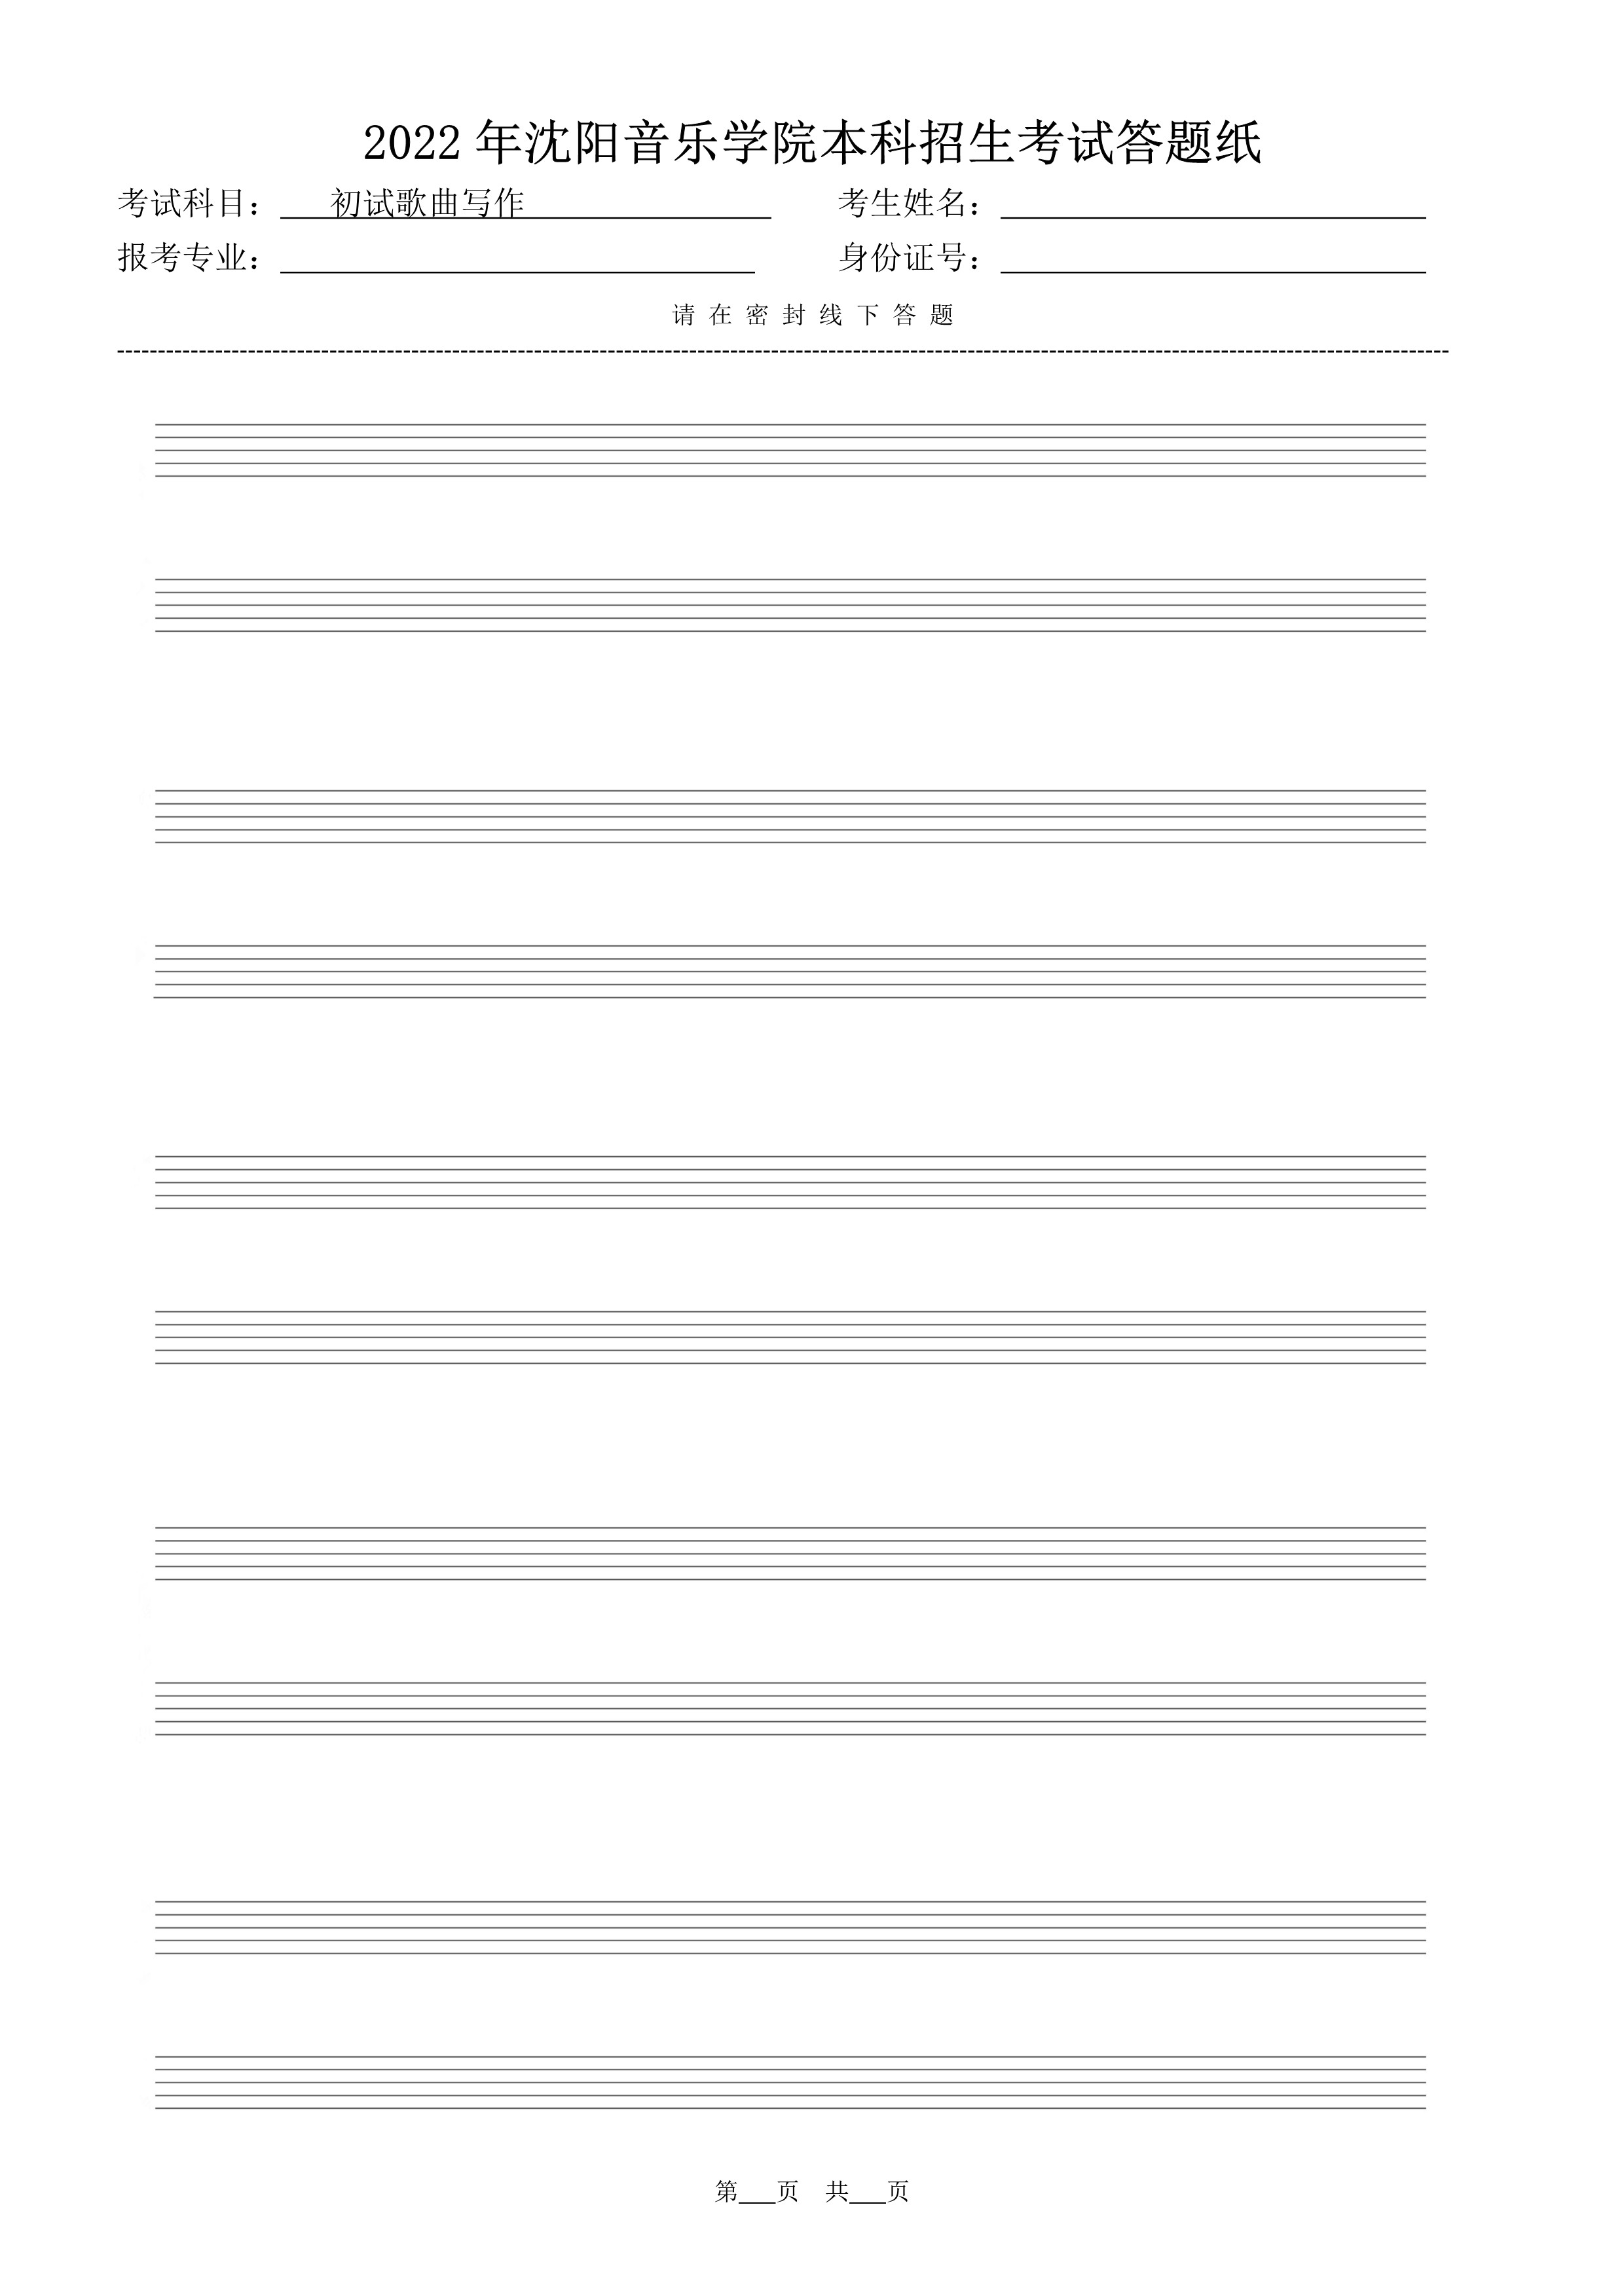 初试歌曲写作答题纸（共5页）_3.jpg